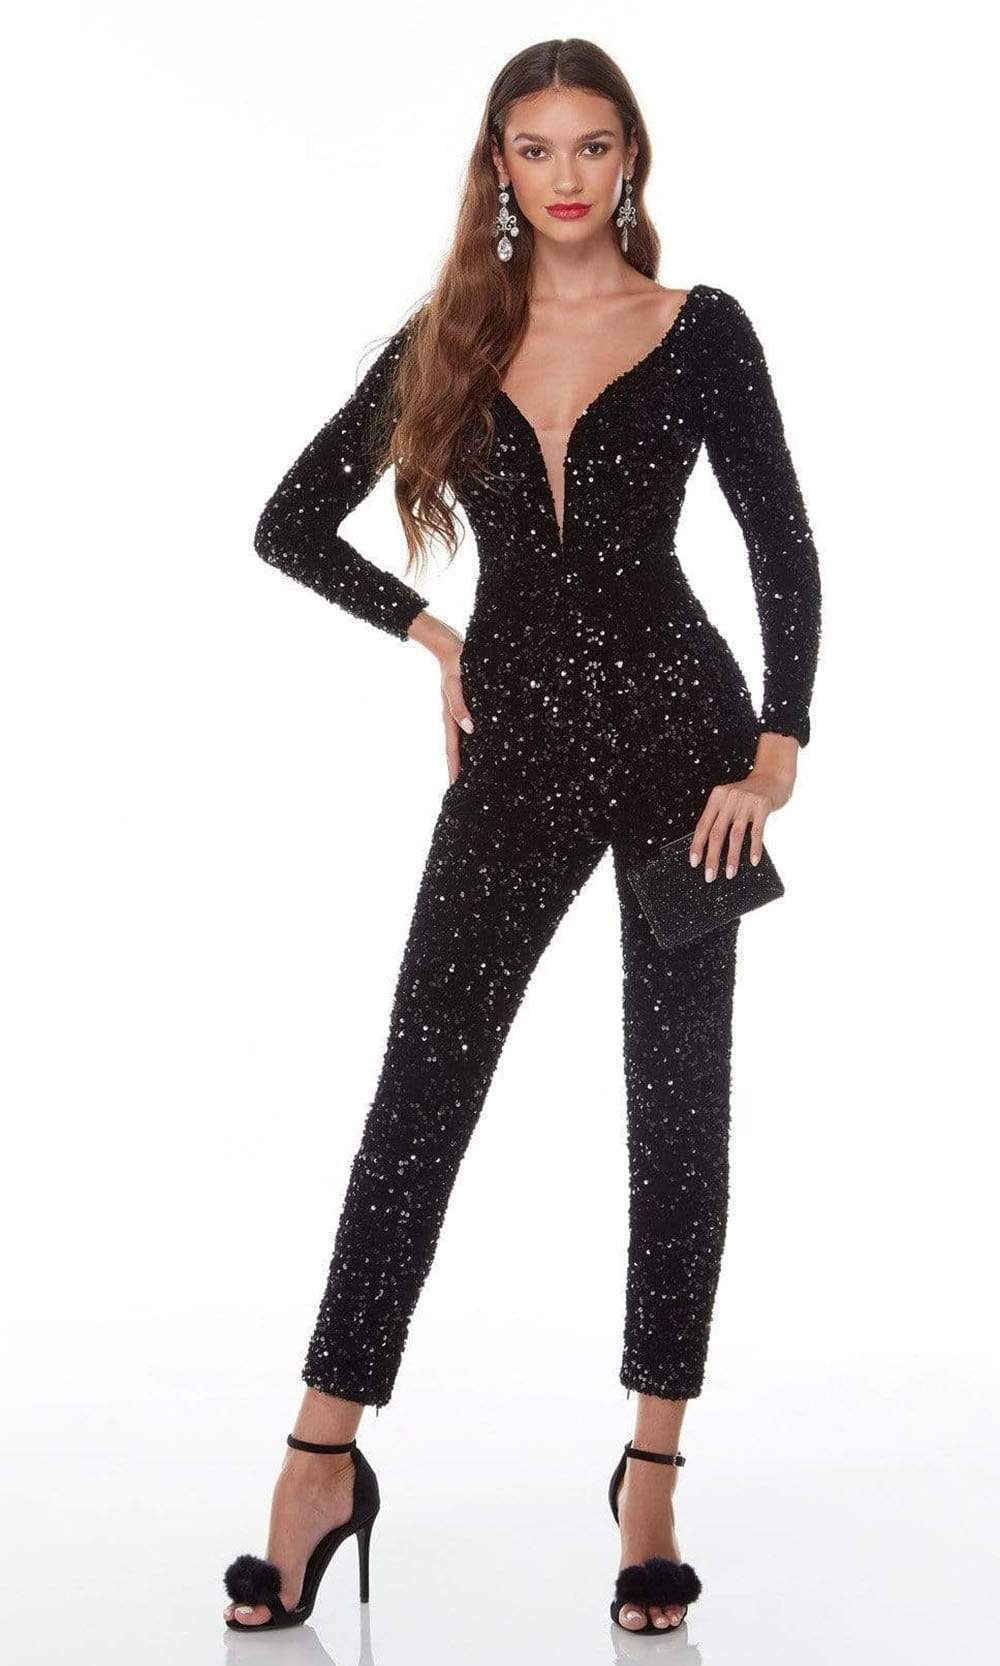 Alyce Paris - 61217 V Neck And Back Sequined Jumpsuit Evening Dresses 000 / Black